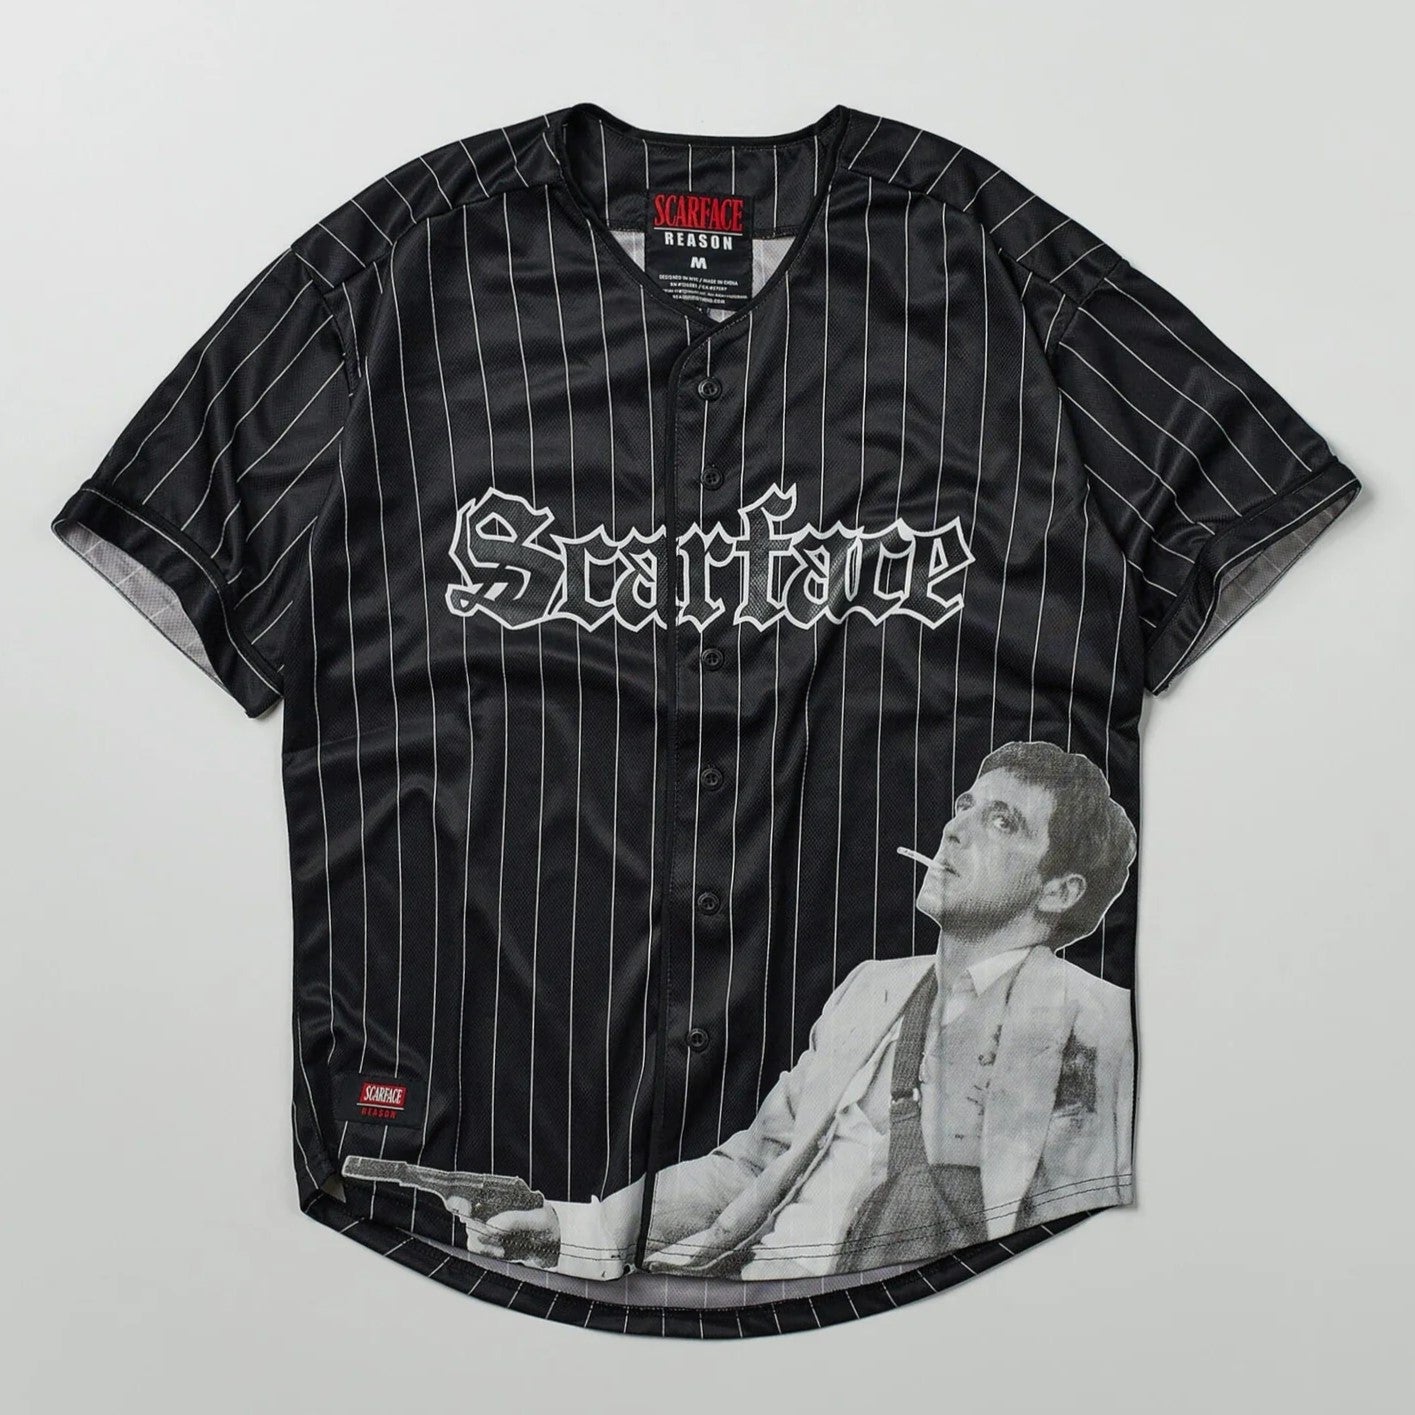 REASON Scarface™ Pinstripe Baseball Jersey